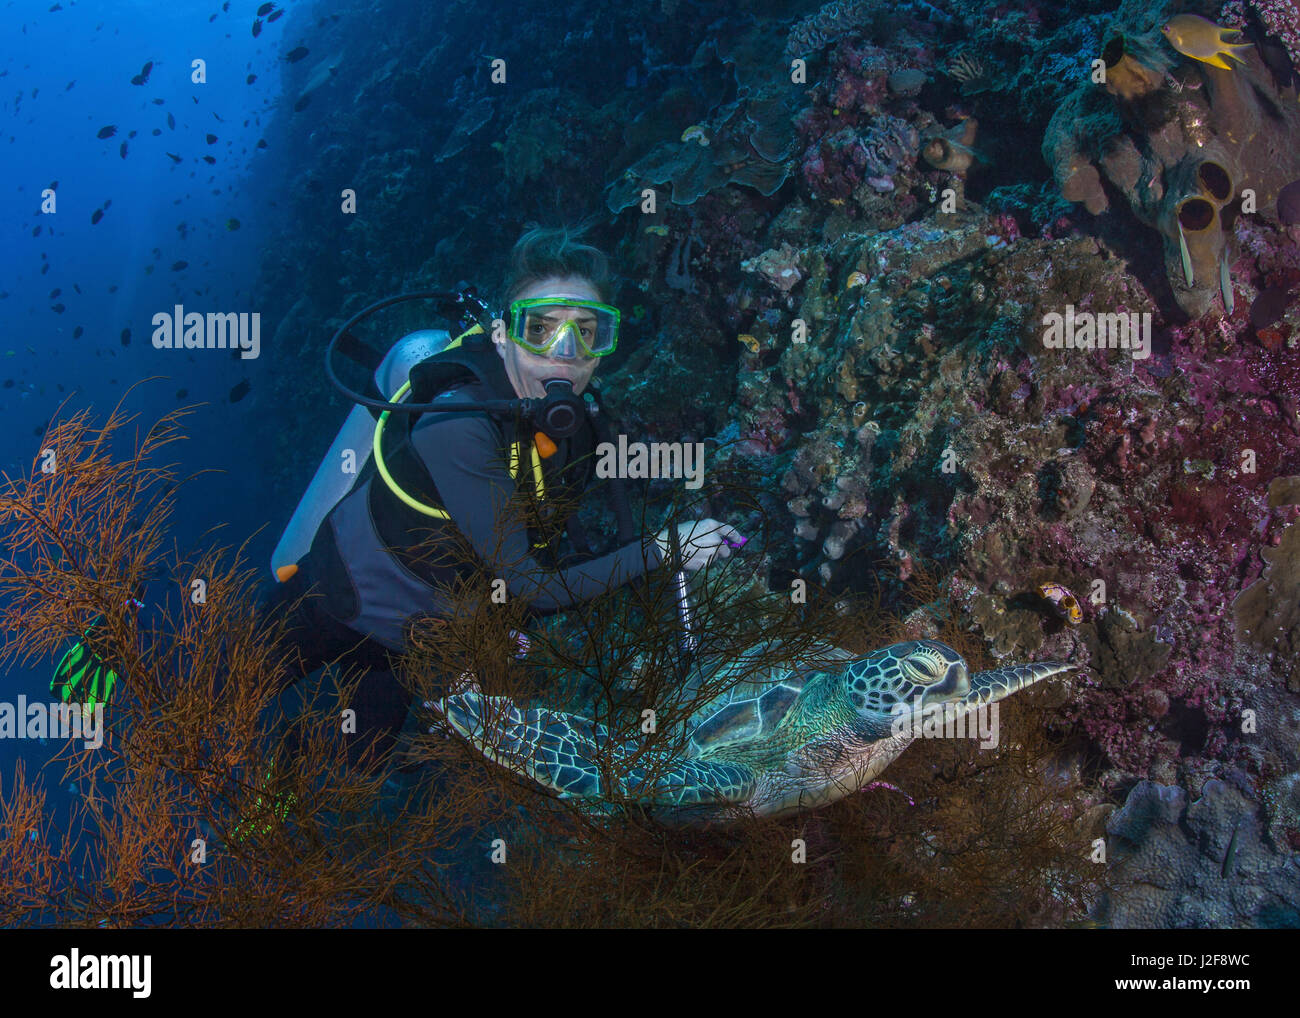 Hembra Scuba Diver Obtiene una cercana a la tortuga carey en descansando en negro coral tree en la pared pared de coral. La isla de Bunaken, Indonesia. Foto de stock